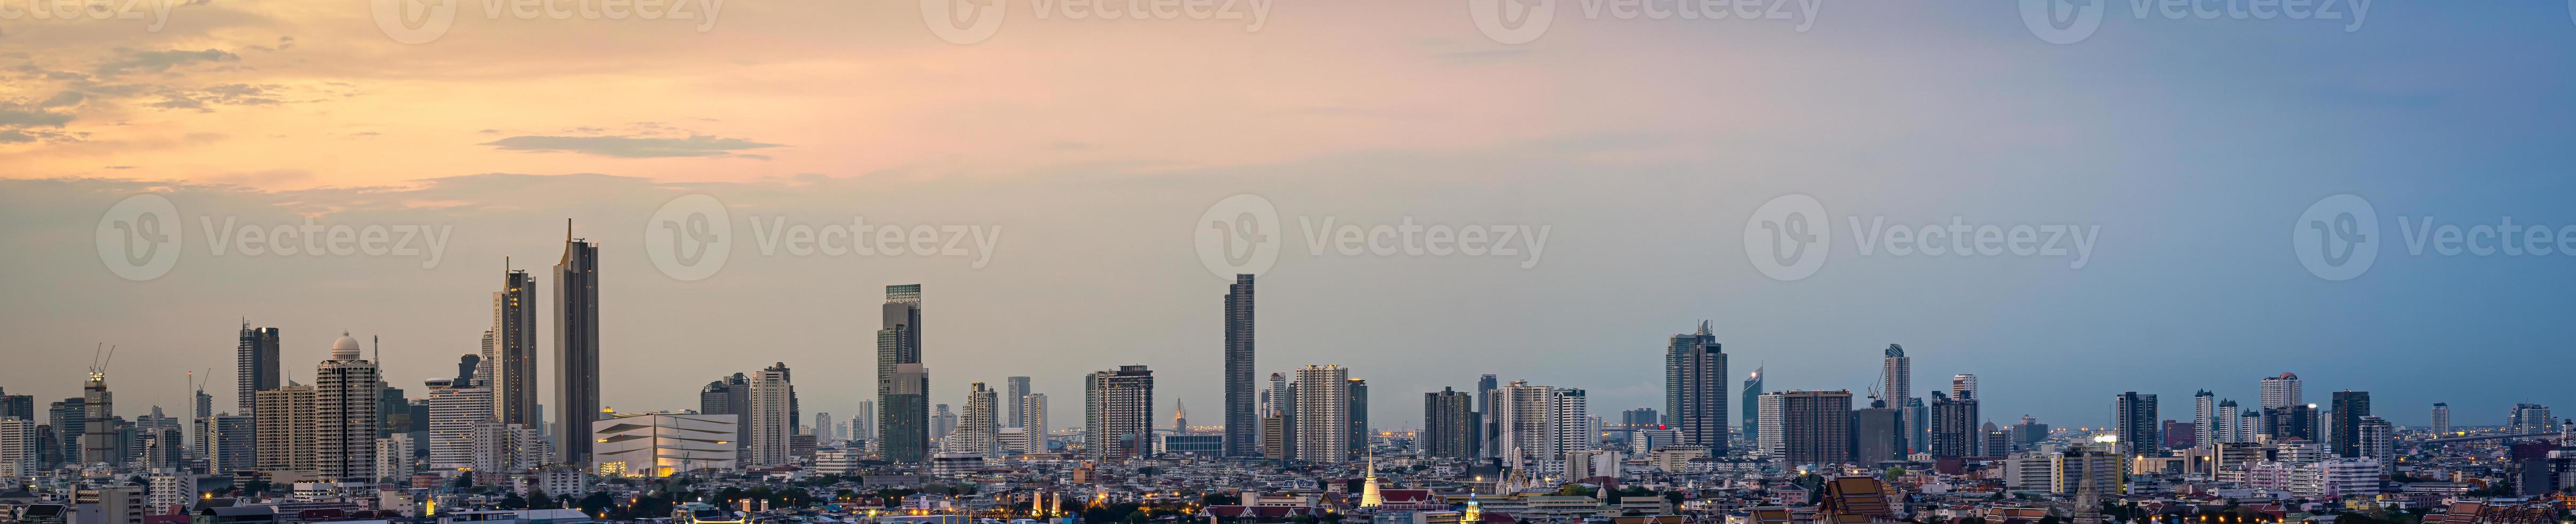 panorama hoogbouw kantoorgebouw het centrum van bangkok. bij zonsopgang is het licht uit de lucht oranje. foto